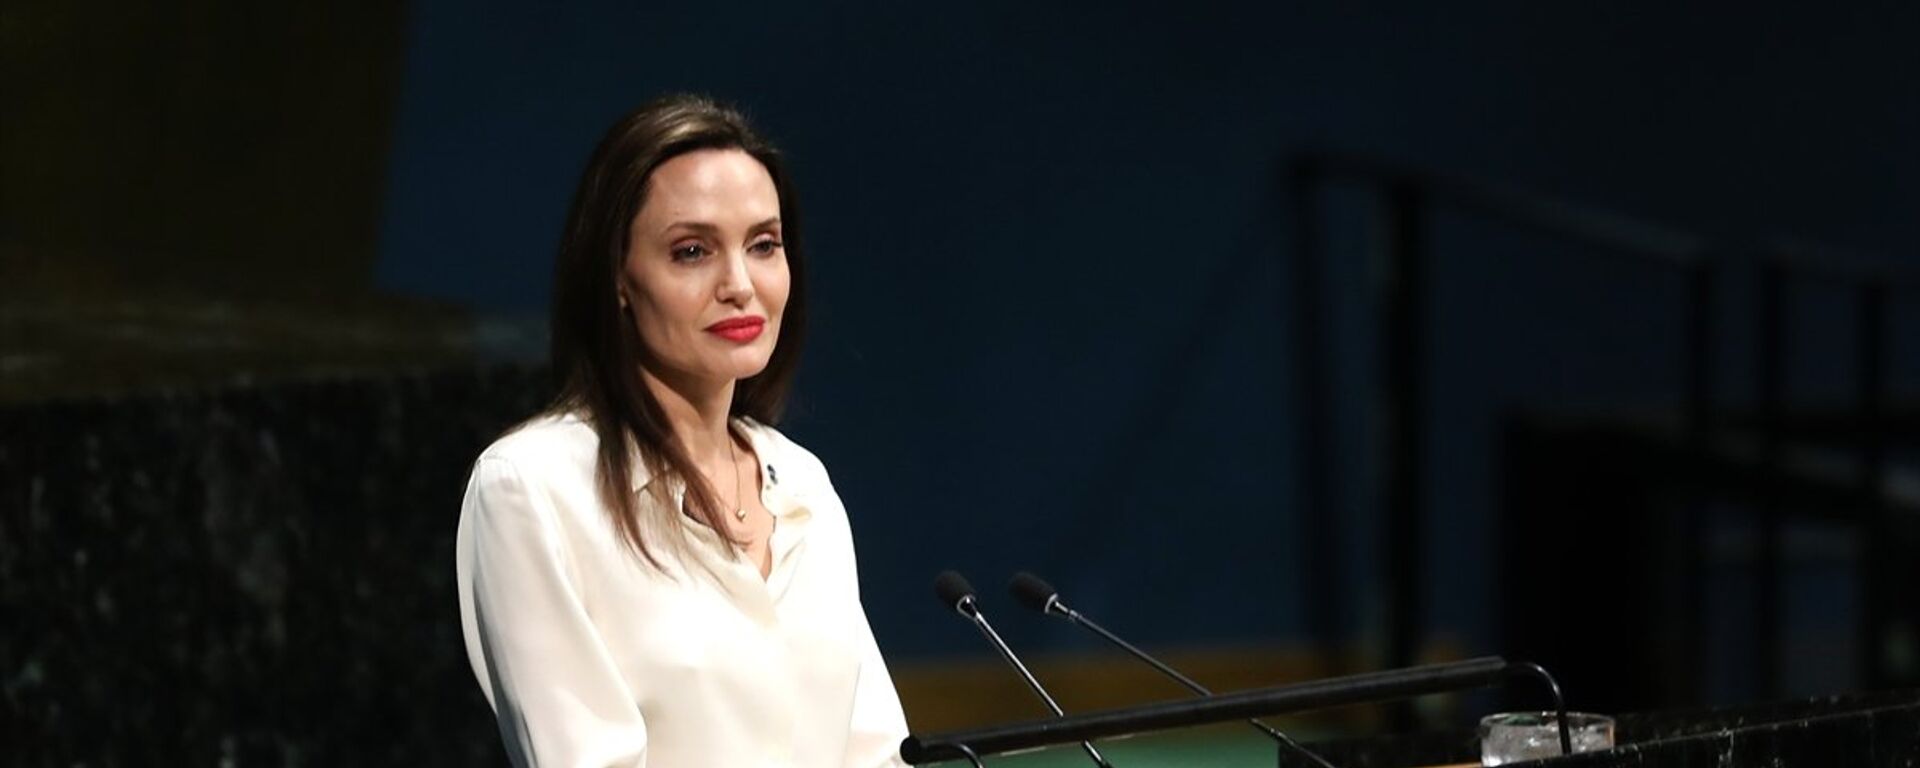 ABD'li ünlü oyuncu ve BM Mülteciler Yüksek Komiserliği İyi Niyet Elçisi Angelina Jolie - Sputnik Türkiye, 1920, 05.09.2021